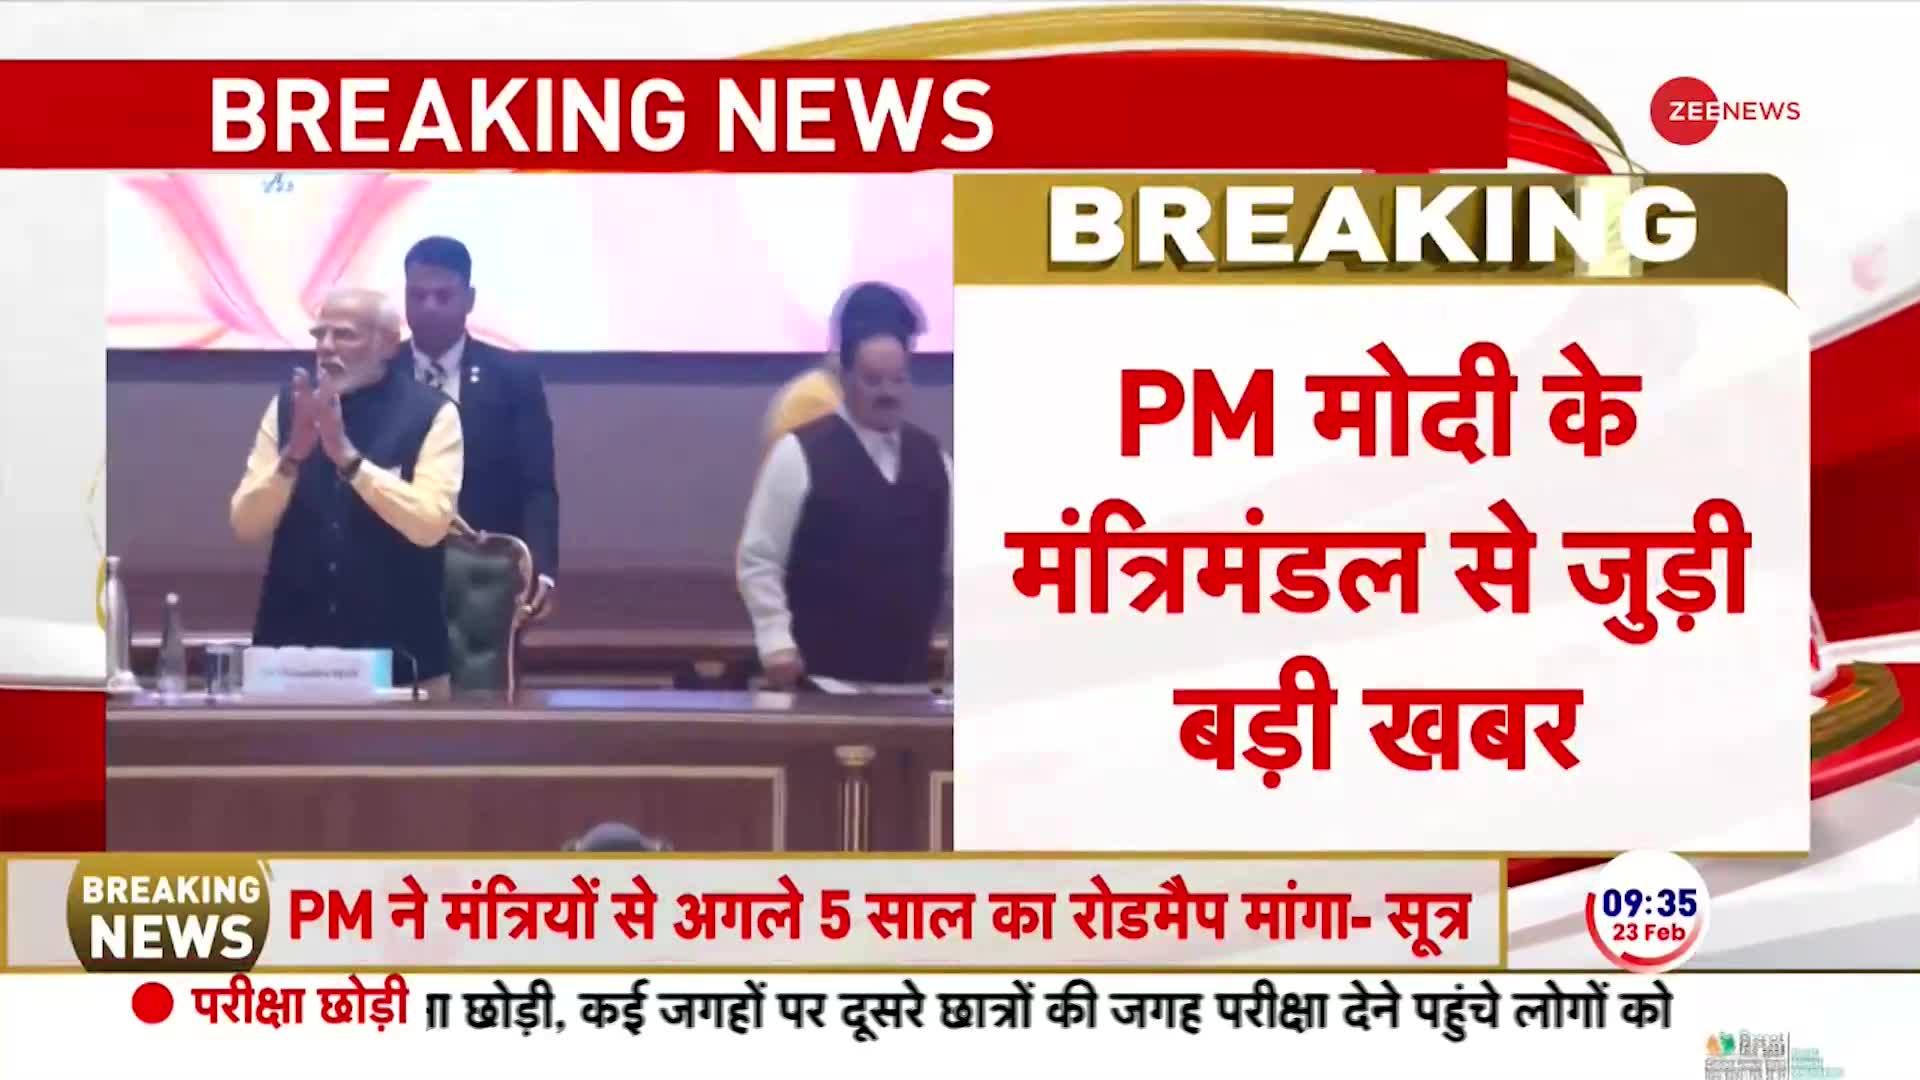 PM Modi Instruction to Cabinet Ministers: PM ने मंत्रियों से मांगा अगले 100 दिन का एक्शन प्लान